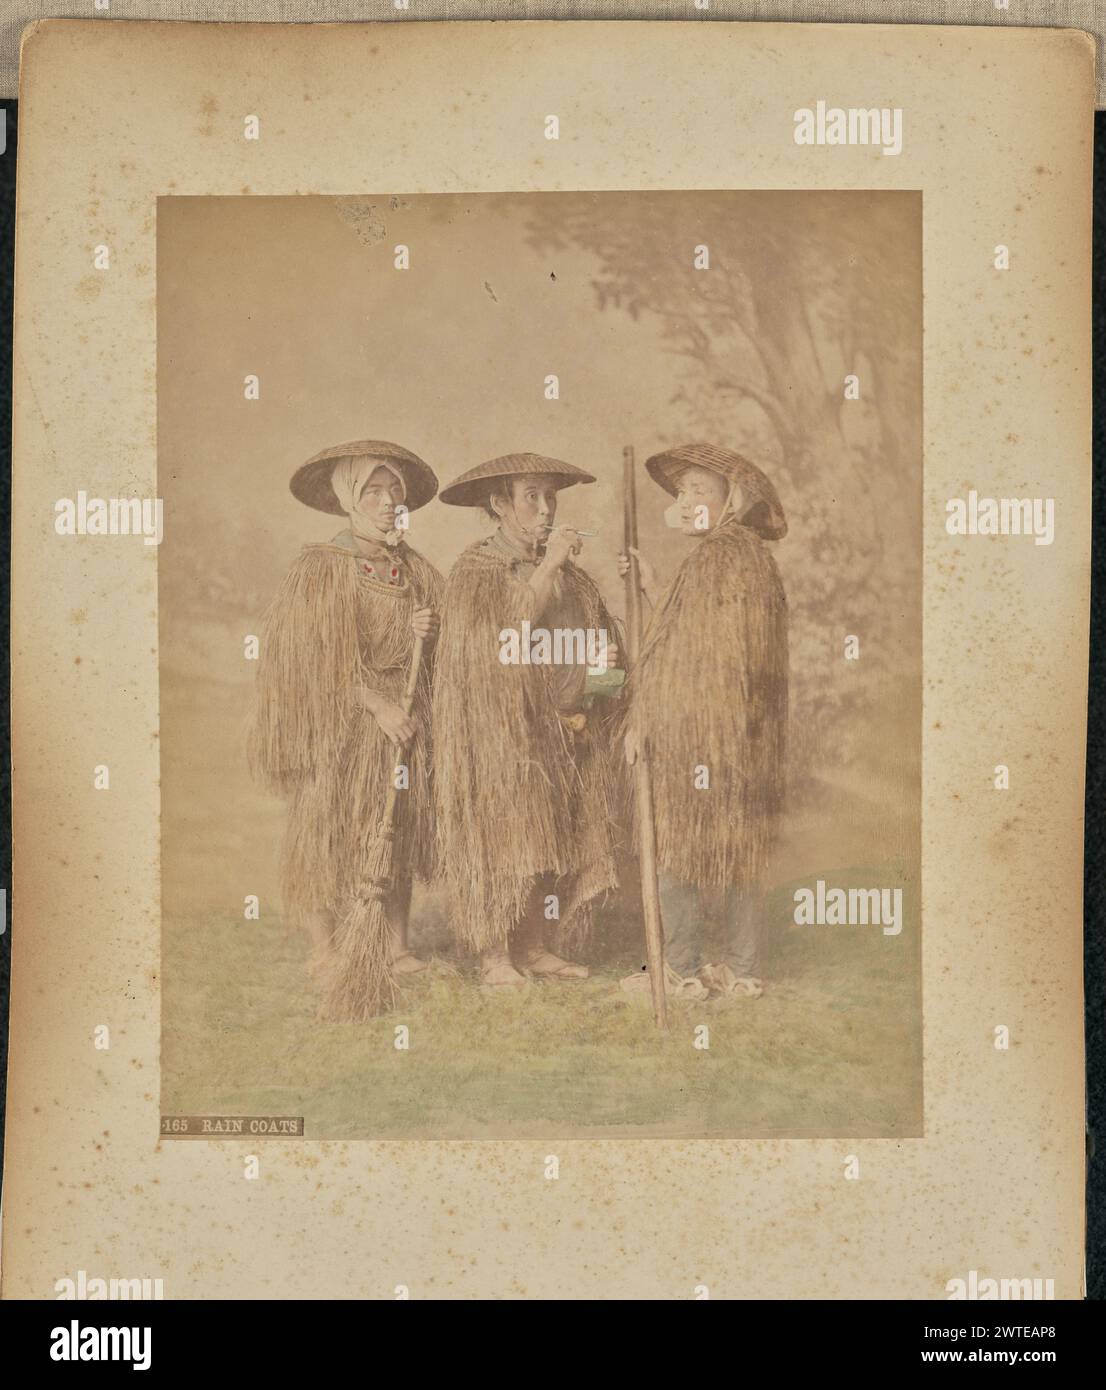 Imperméables. Attribué à Adolfo Farsari, photographe (américain, 1841 - 1898) des années 1875 à 1890 Portrait de studio de trois hommes portant des « mino », des imperméables japonais traditionnels fabriqués à partir de pailles. L'homme à gauche de l'image tient un balai de paille. (Recto, impression) en bas à gauche, imprimé en négatif : « 165 RAIN COAT »; Banque D'Images